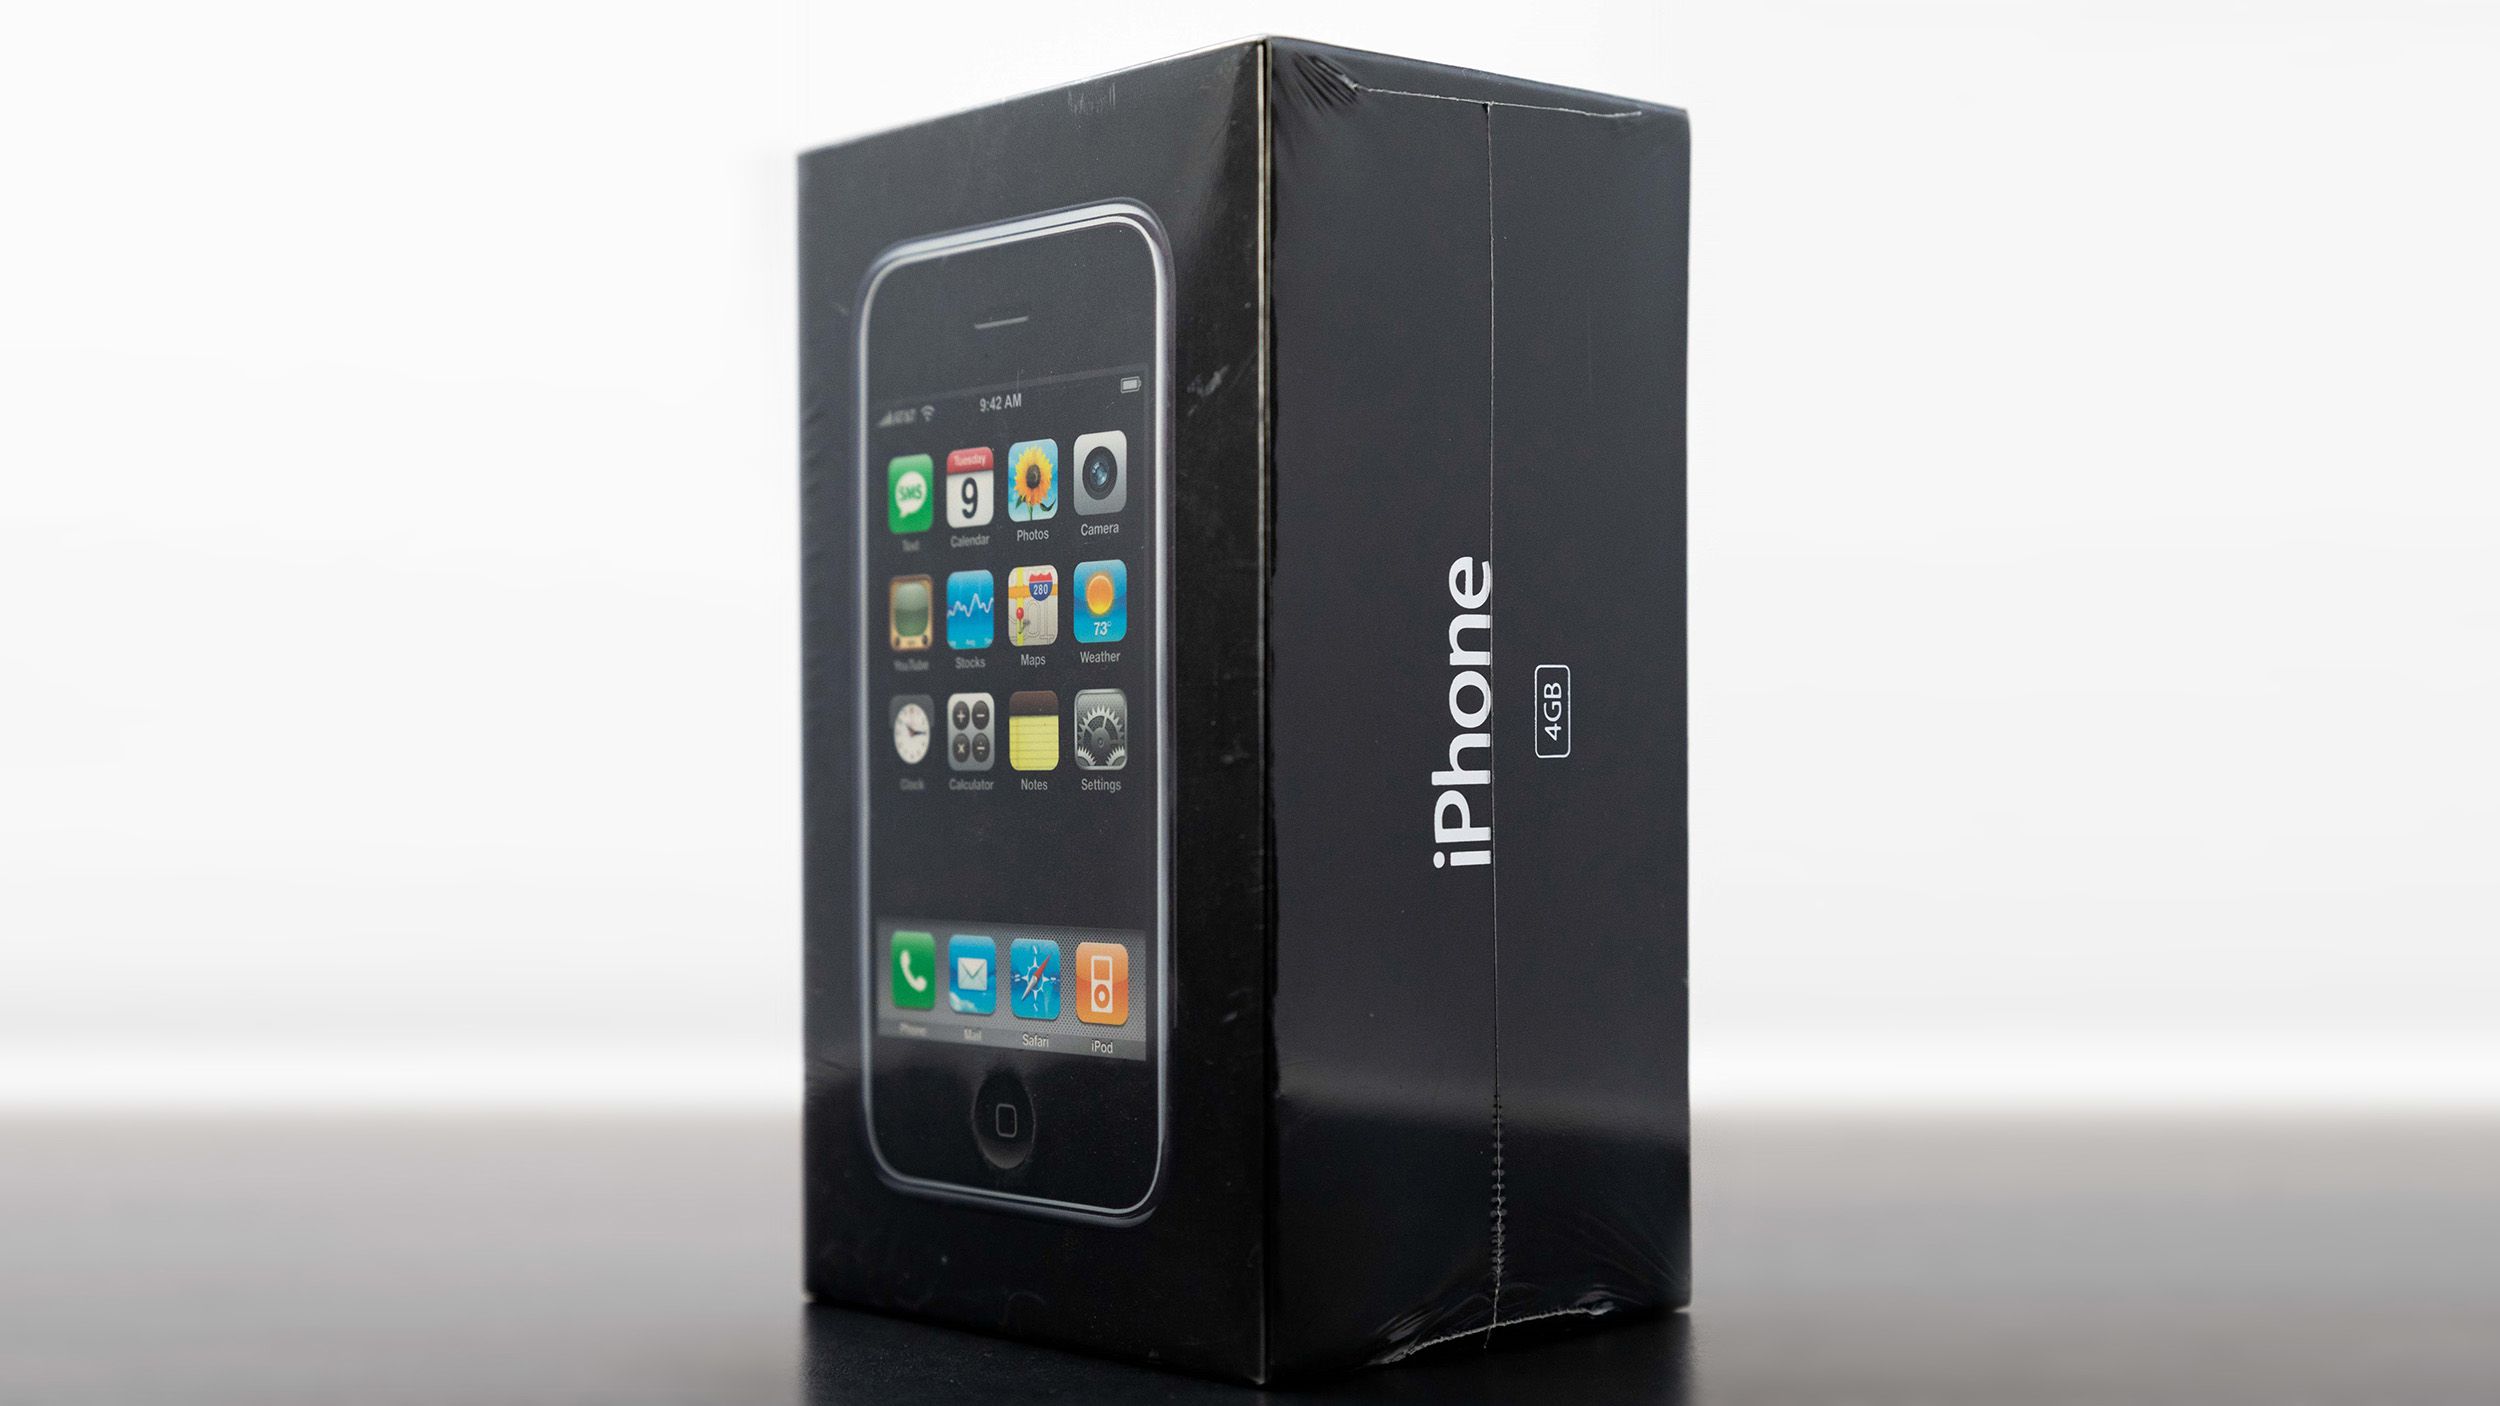 Liciten egy elképesztően ritka első iPhone, 100 ezer dollárt fizethet valaki érte